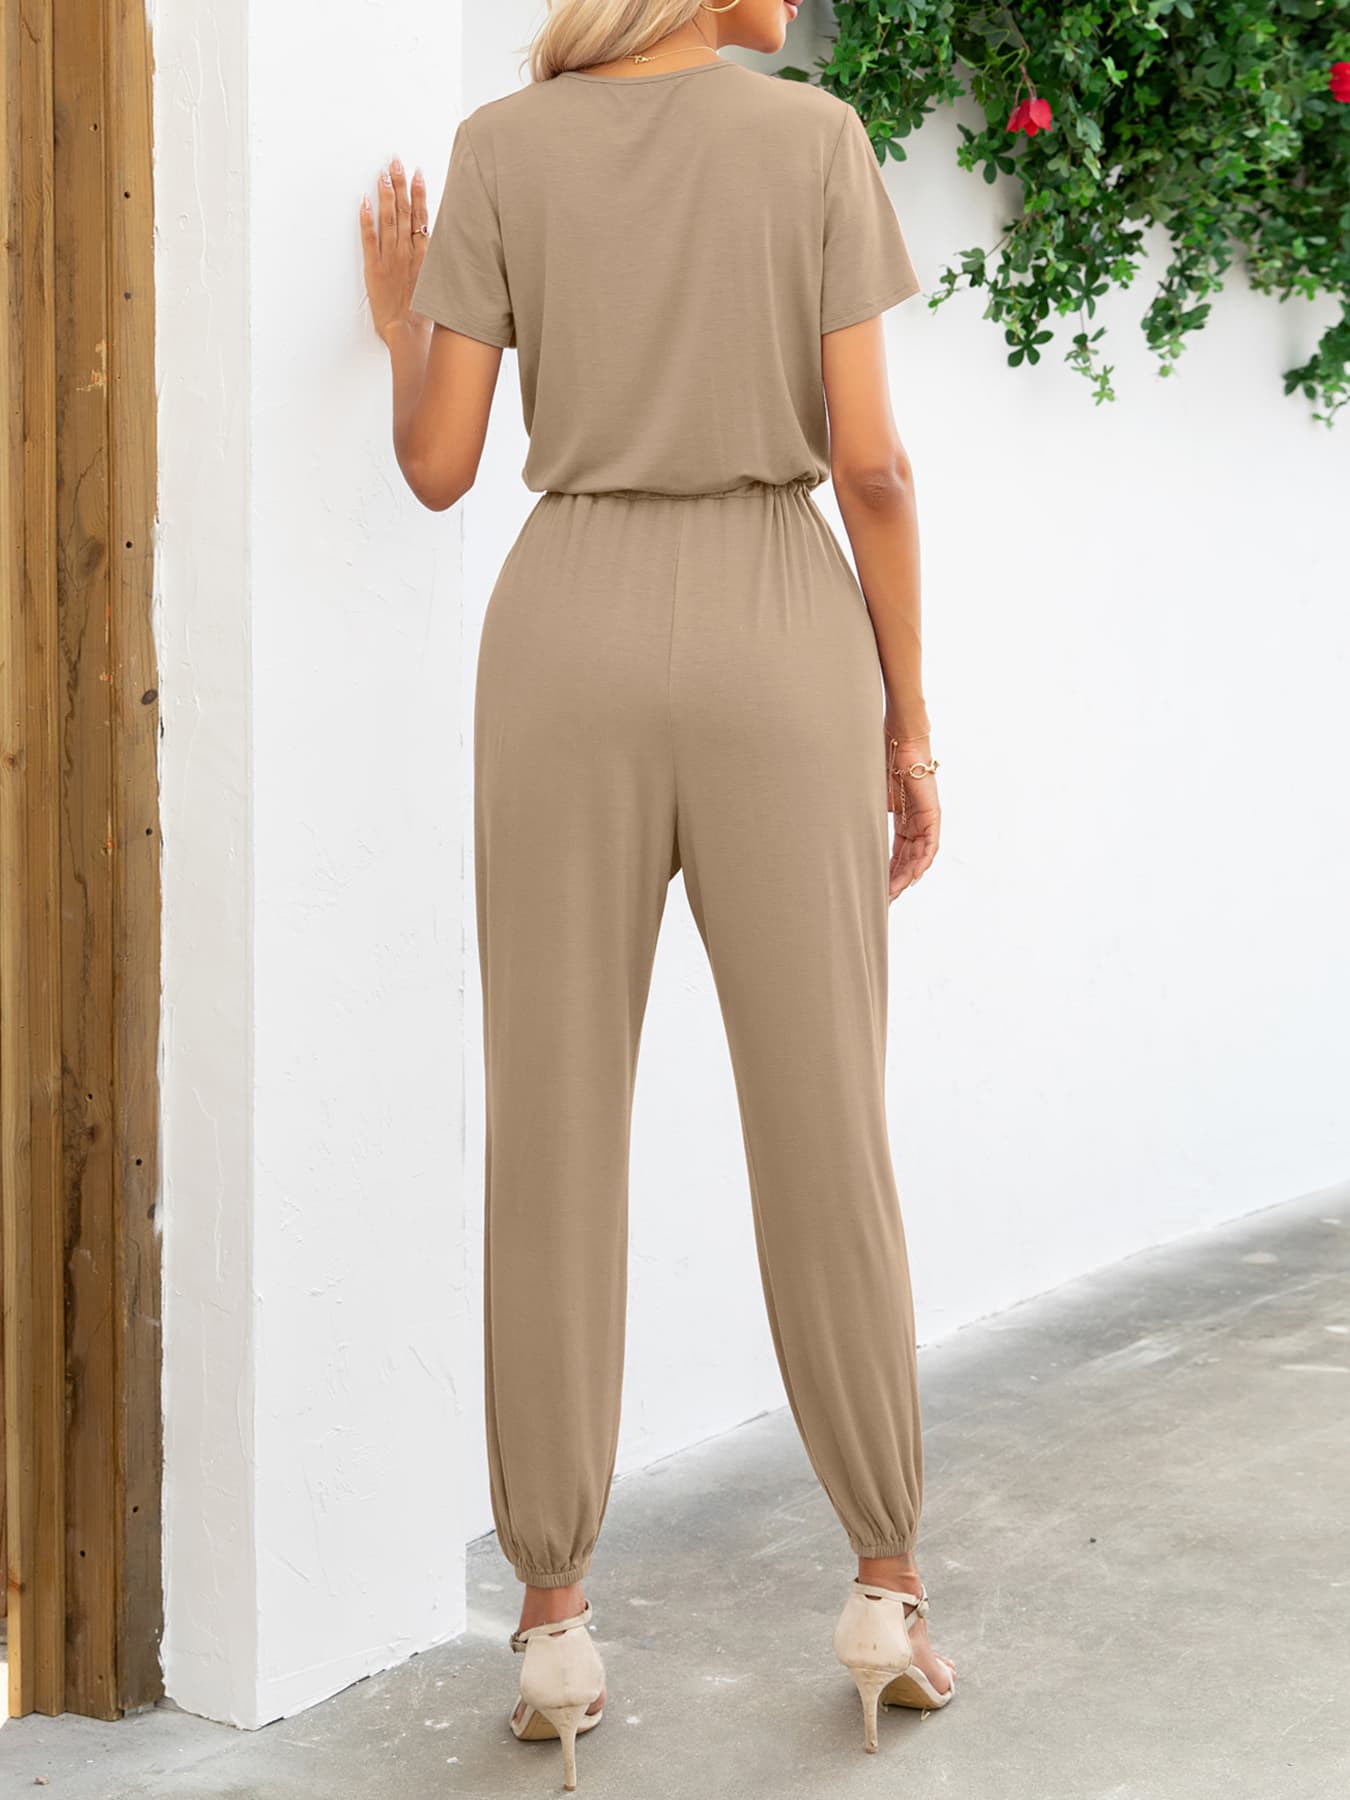 Short Sleeve V-Neck Jumpsuit with Pockets